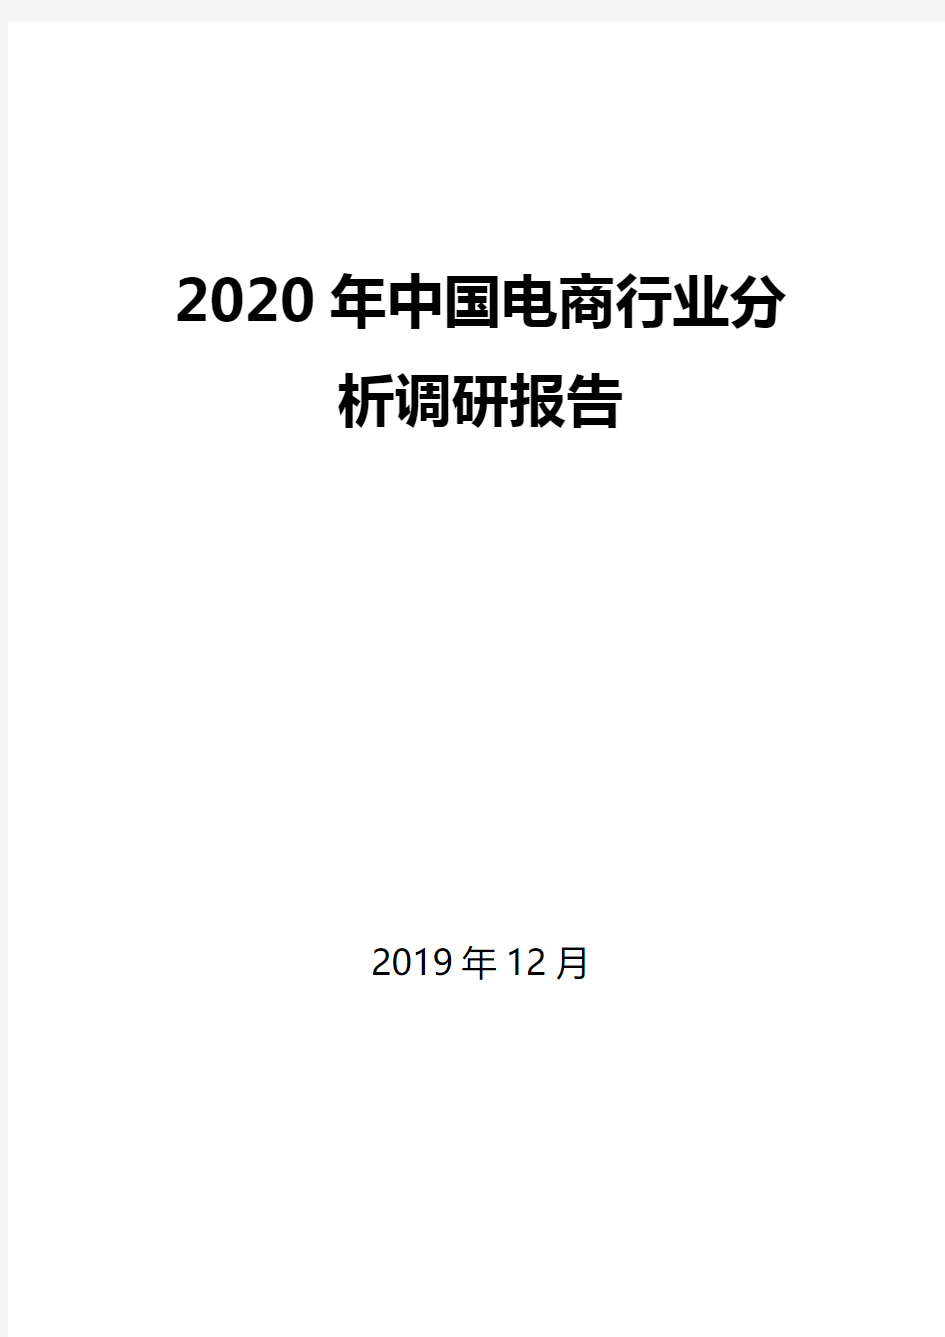 2020年中国电商行业分析调研报告